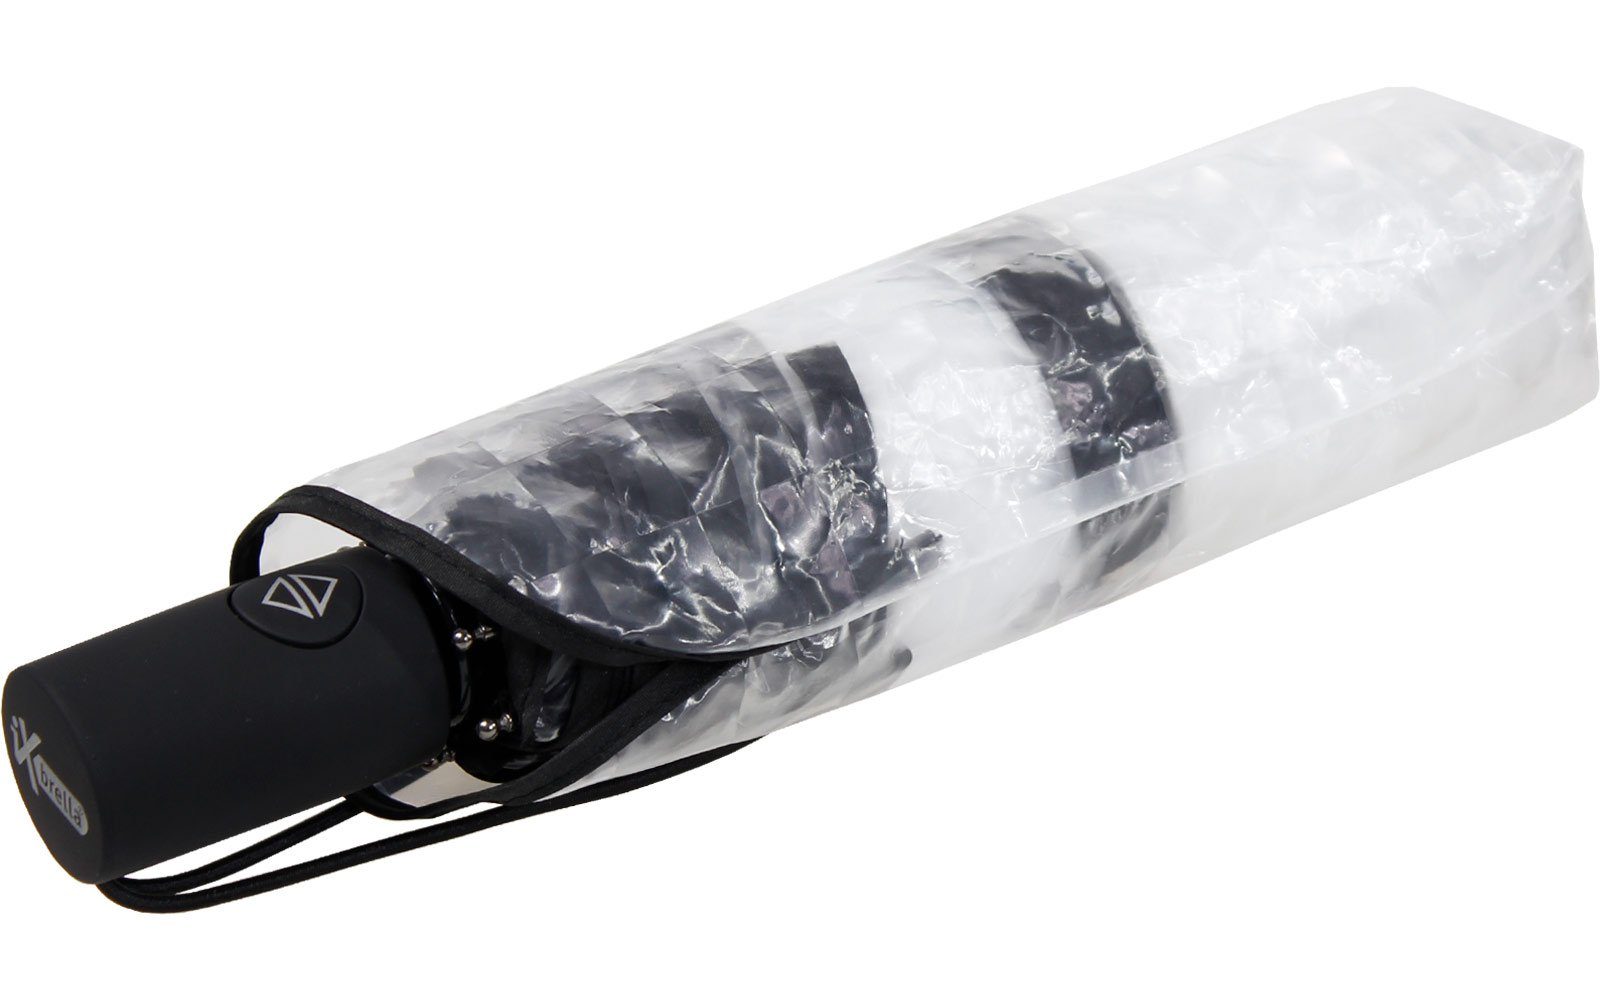 Lens-Effekt, rot Minischirm transparent-schwarz in Transparent iX-brella mit weiß, schwarz Automatik Taschenregenschirm und